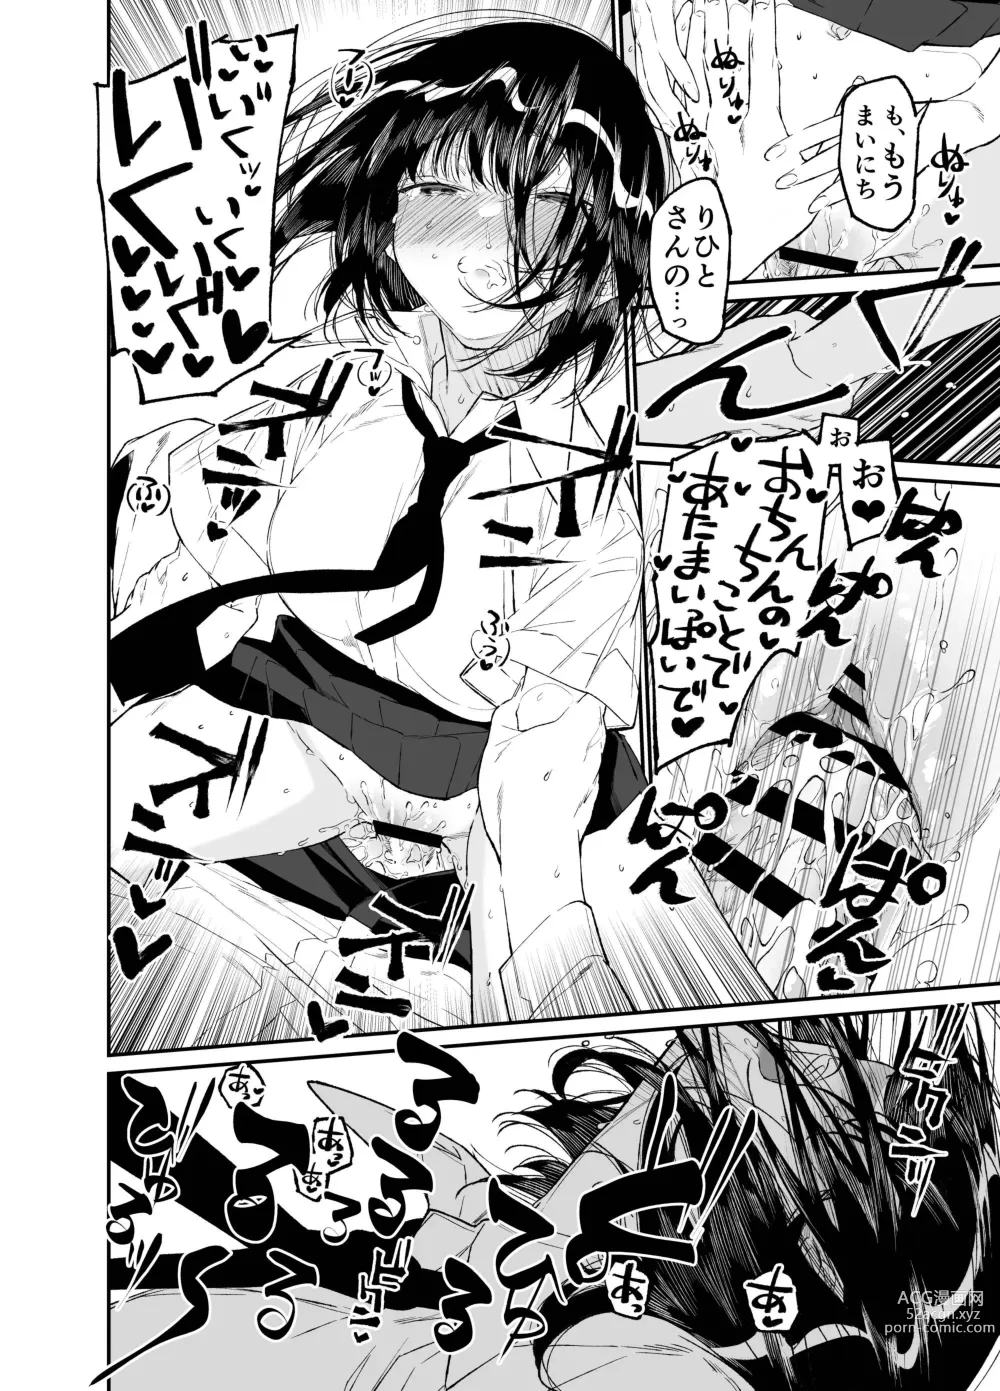 Page 56 of doujinshi Natsu, Shoujo wa Tonde, Hi ni Iru.